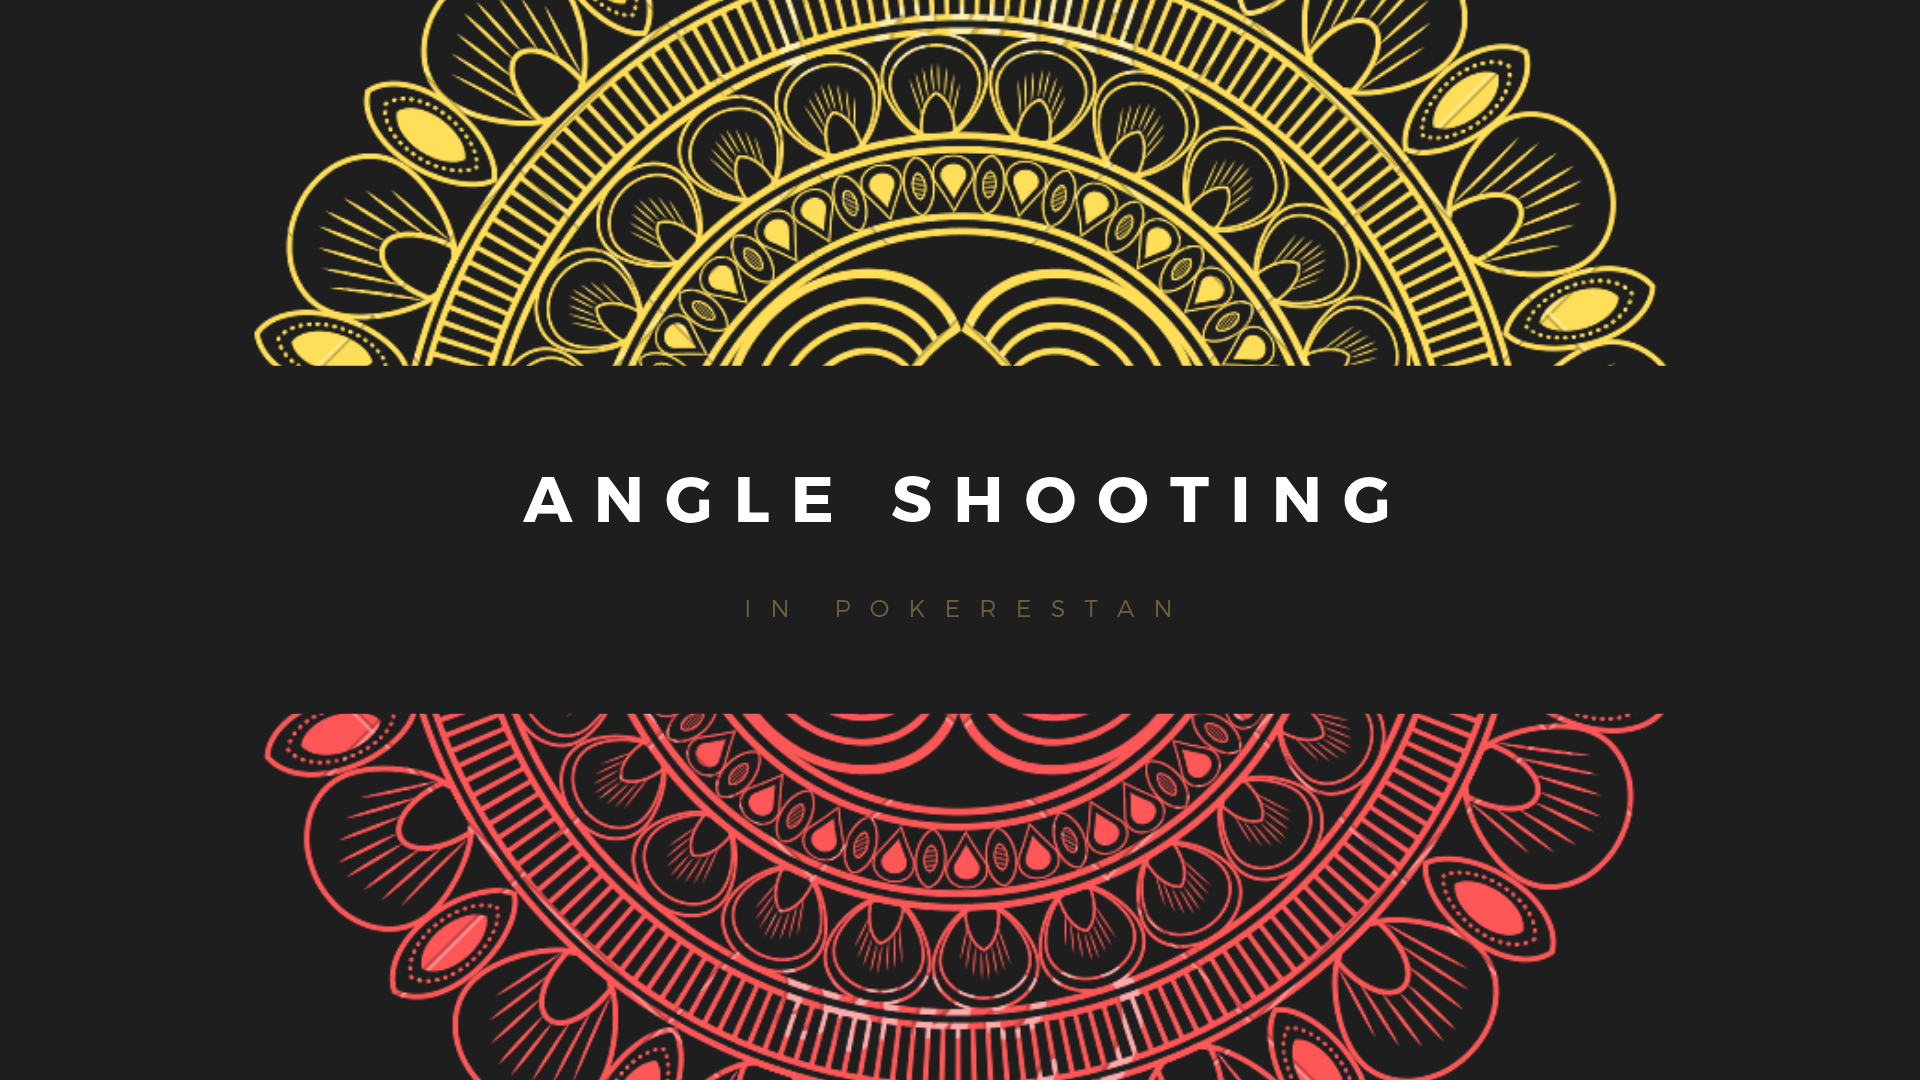 حرکات غیراخلاقی در پوکر angle shooting